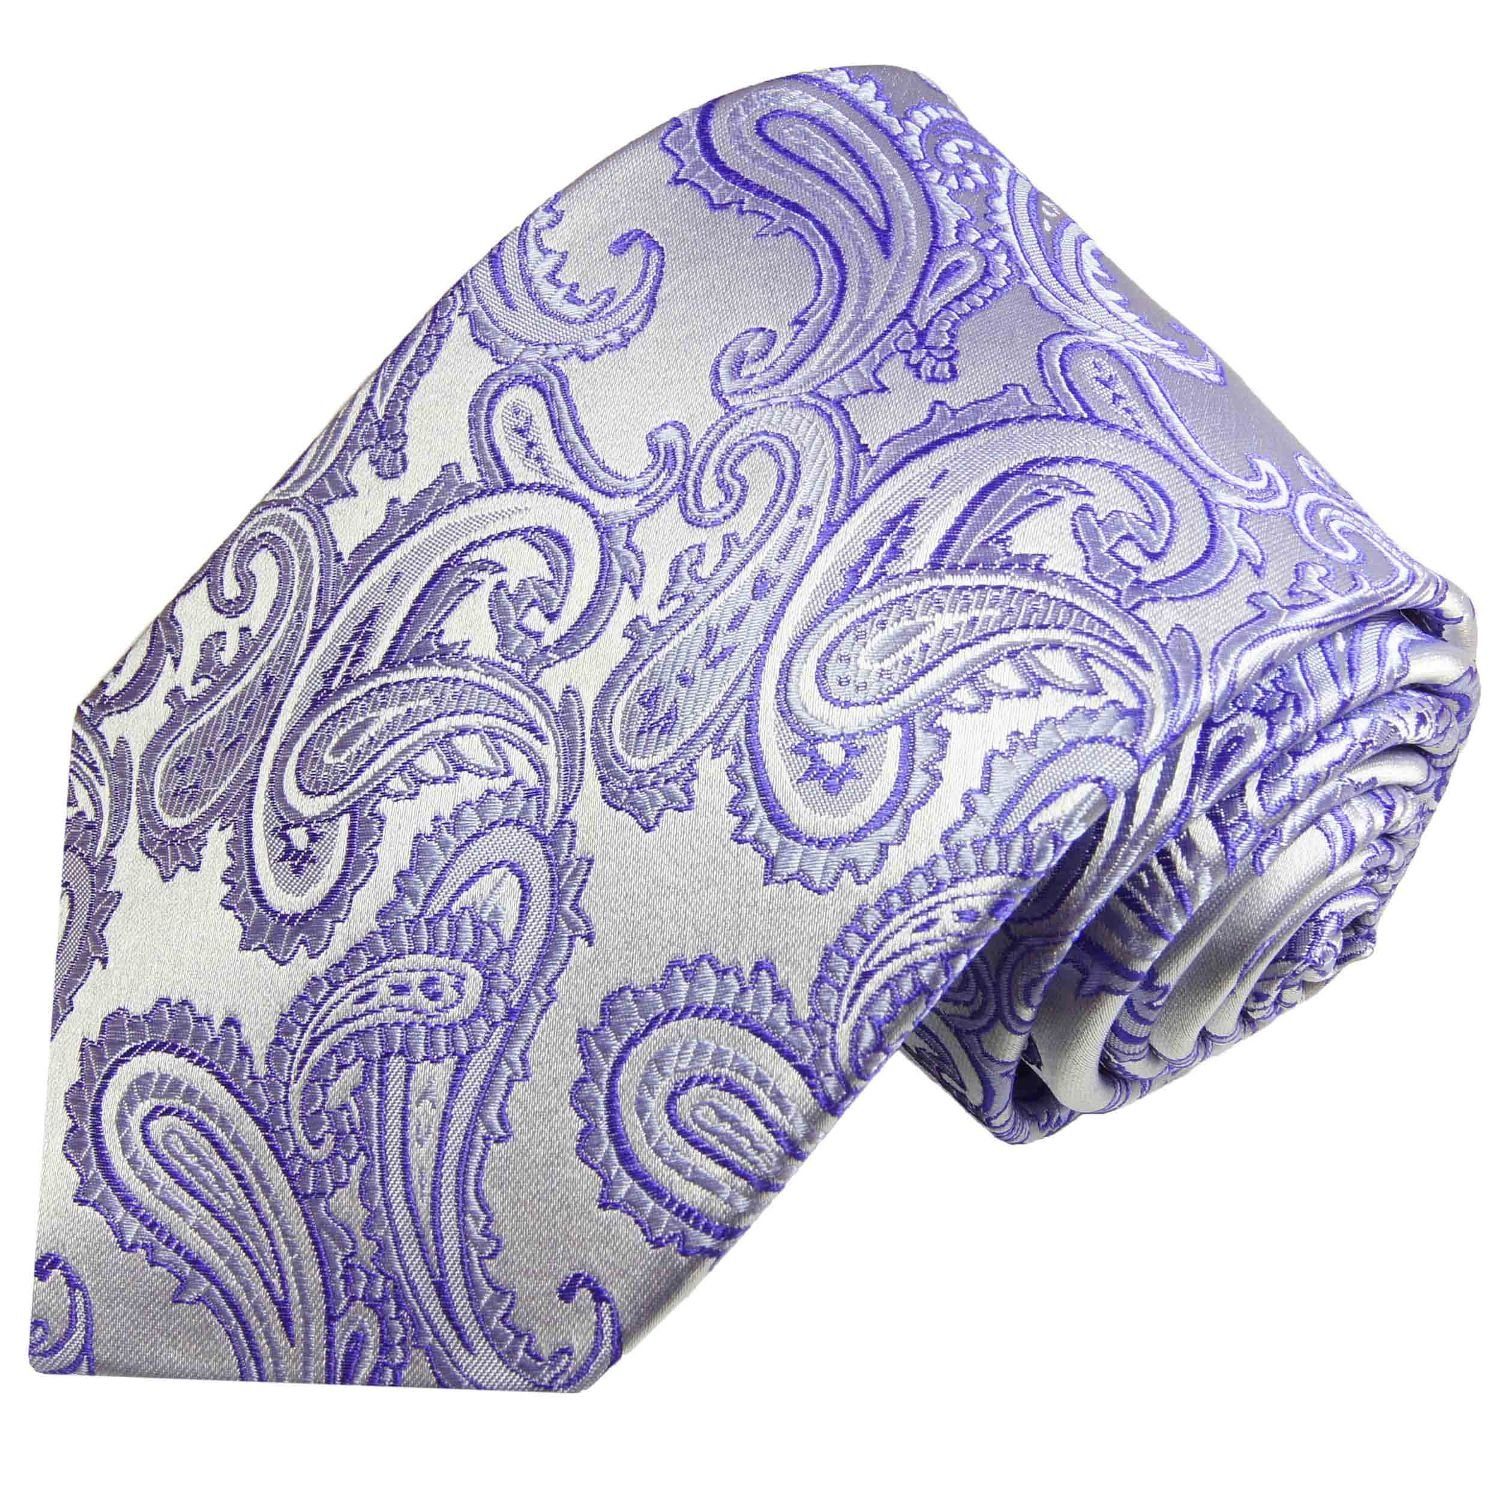 Paul Malone Krawatte Elegante Seidenkrawatte Herren Schlips paisley brokat 100% Seide Schmal (6cm), lila violett silber 996